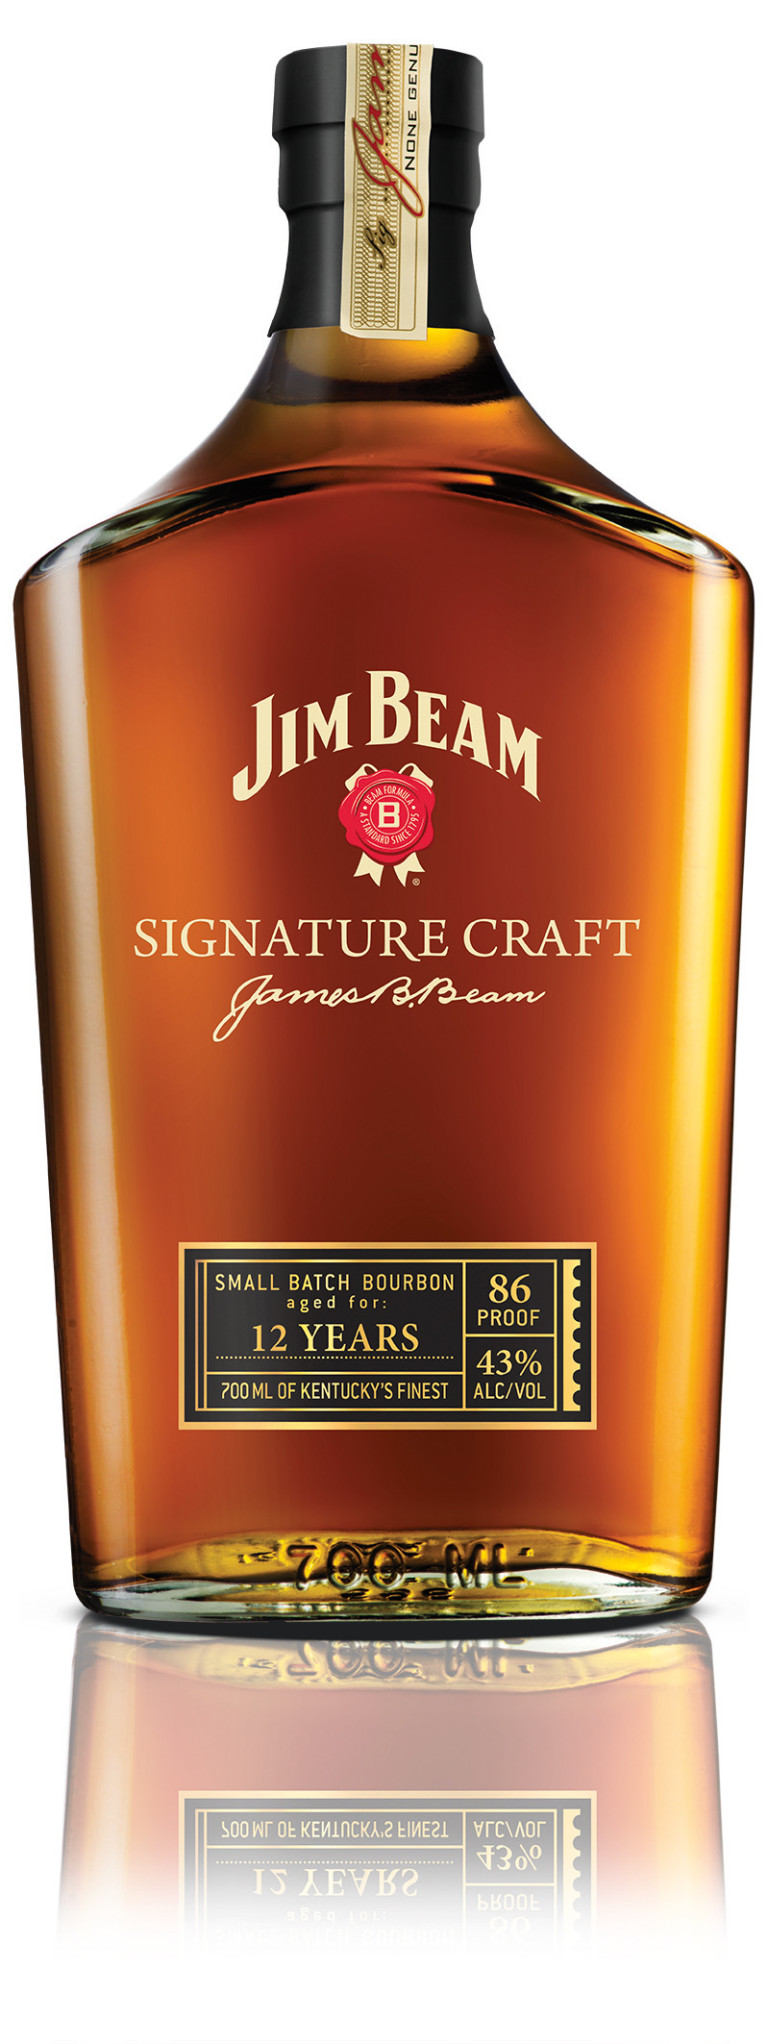 Jim Beam Signature Craft 12 Years nun auch in Österreich erhältlich